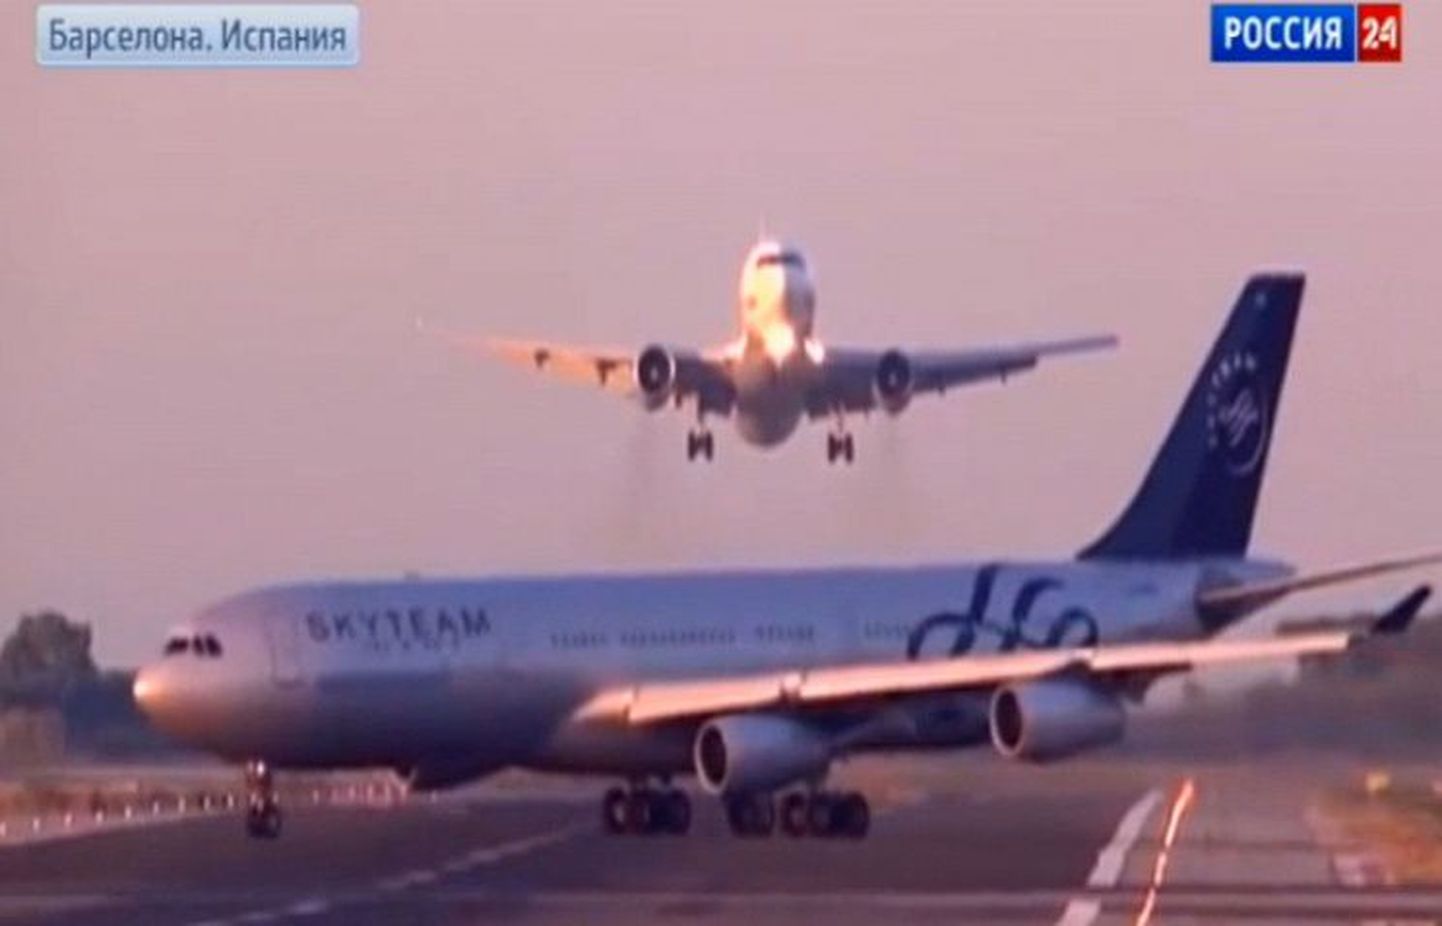 В международном аэропорту Барселоны российский авиалайнер, принадлежащий компании UTair, чуть не столкнулся с самолетом из Аргентины.